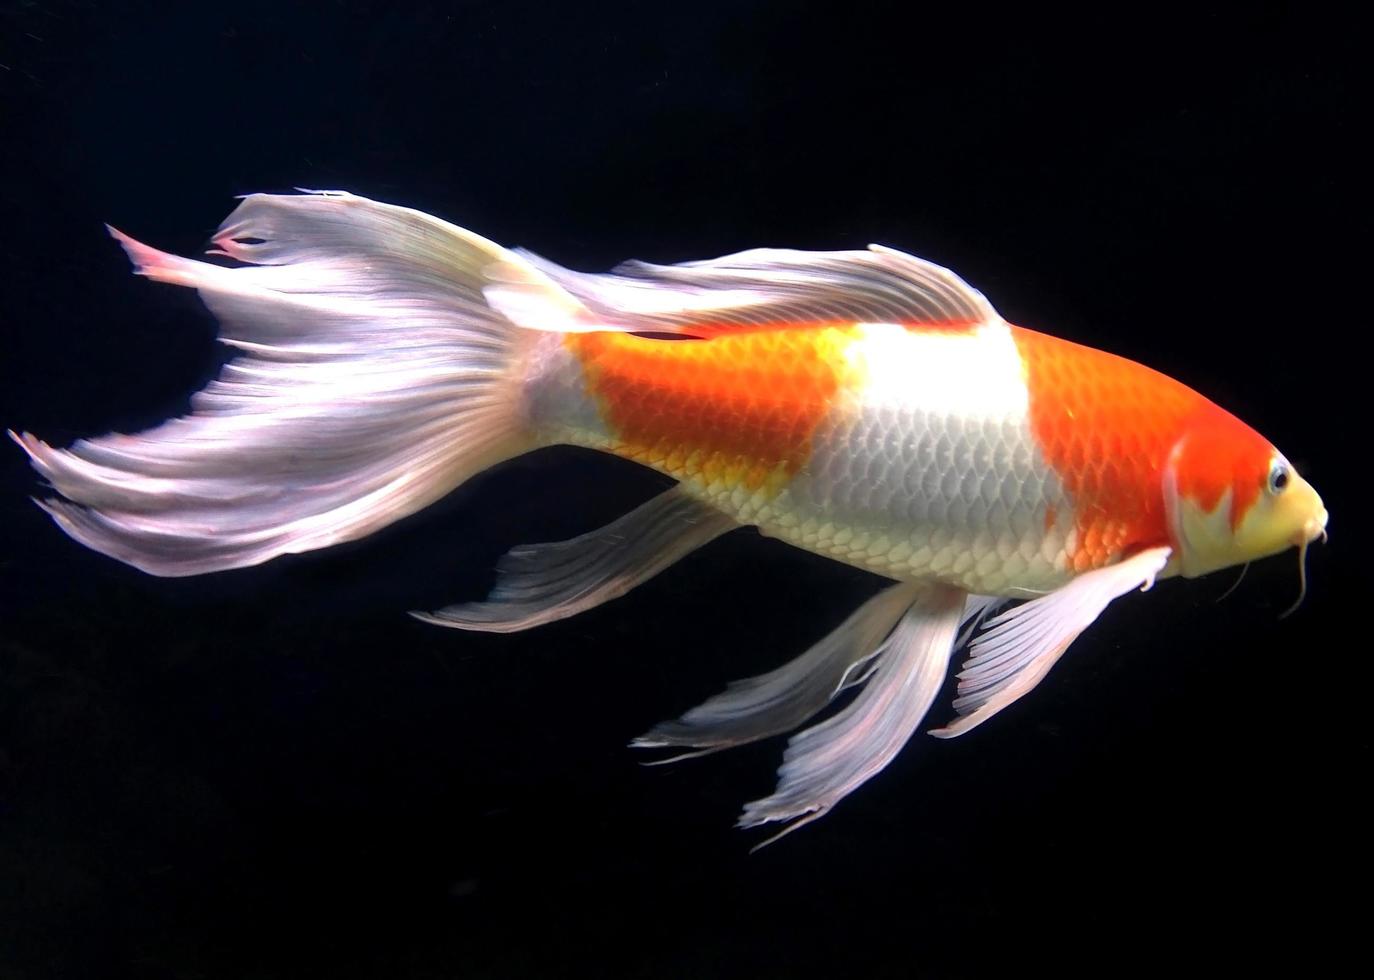 peixes brancos e laranja no aquário foto